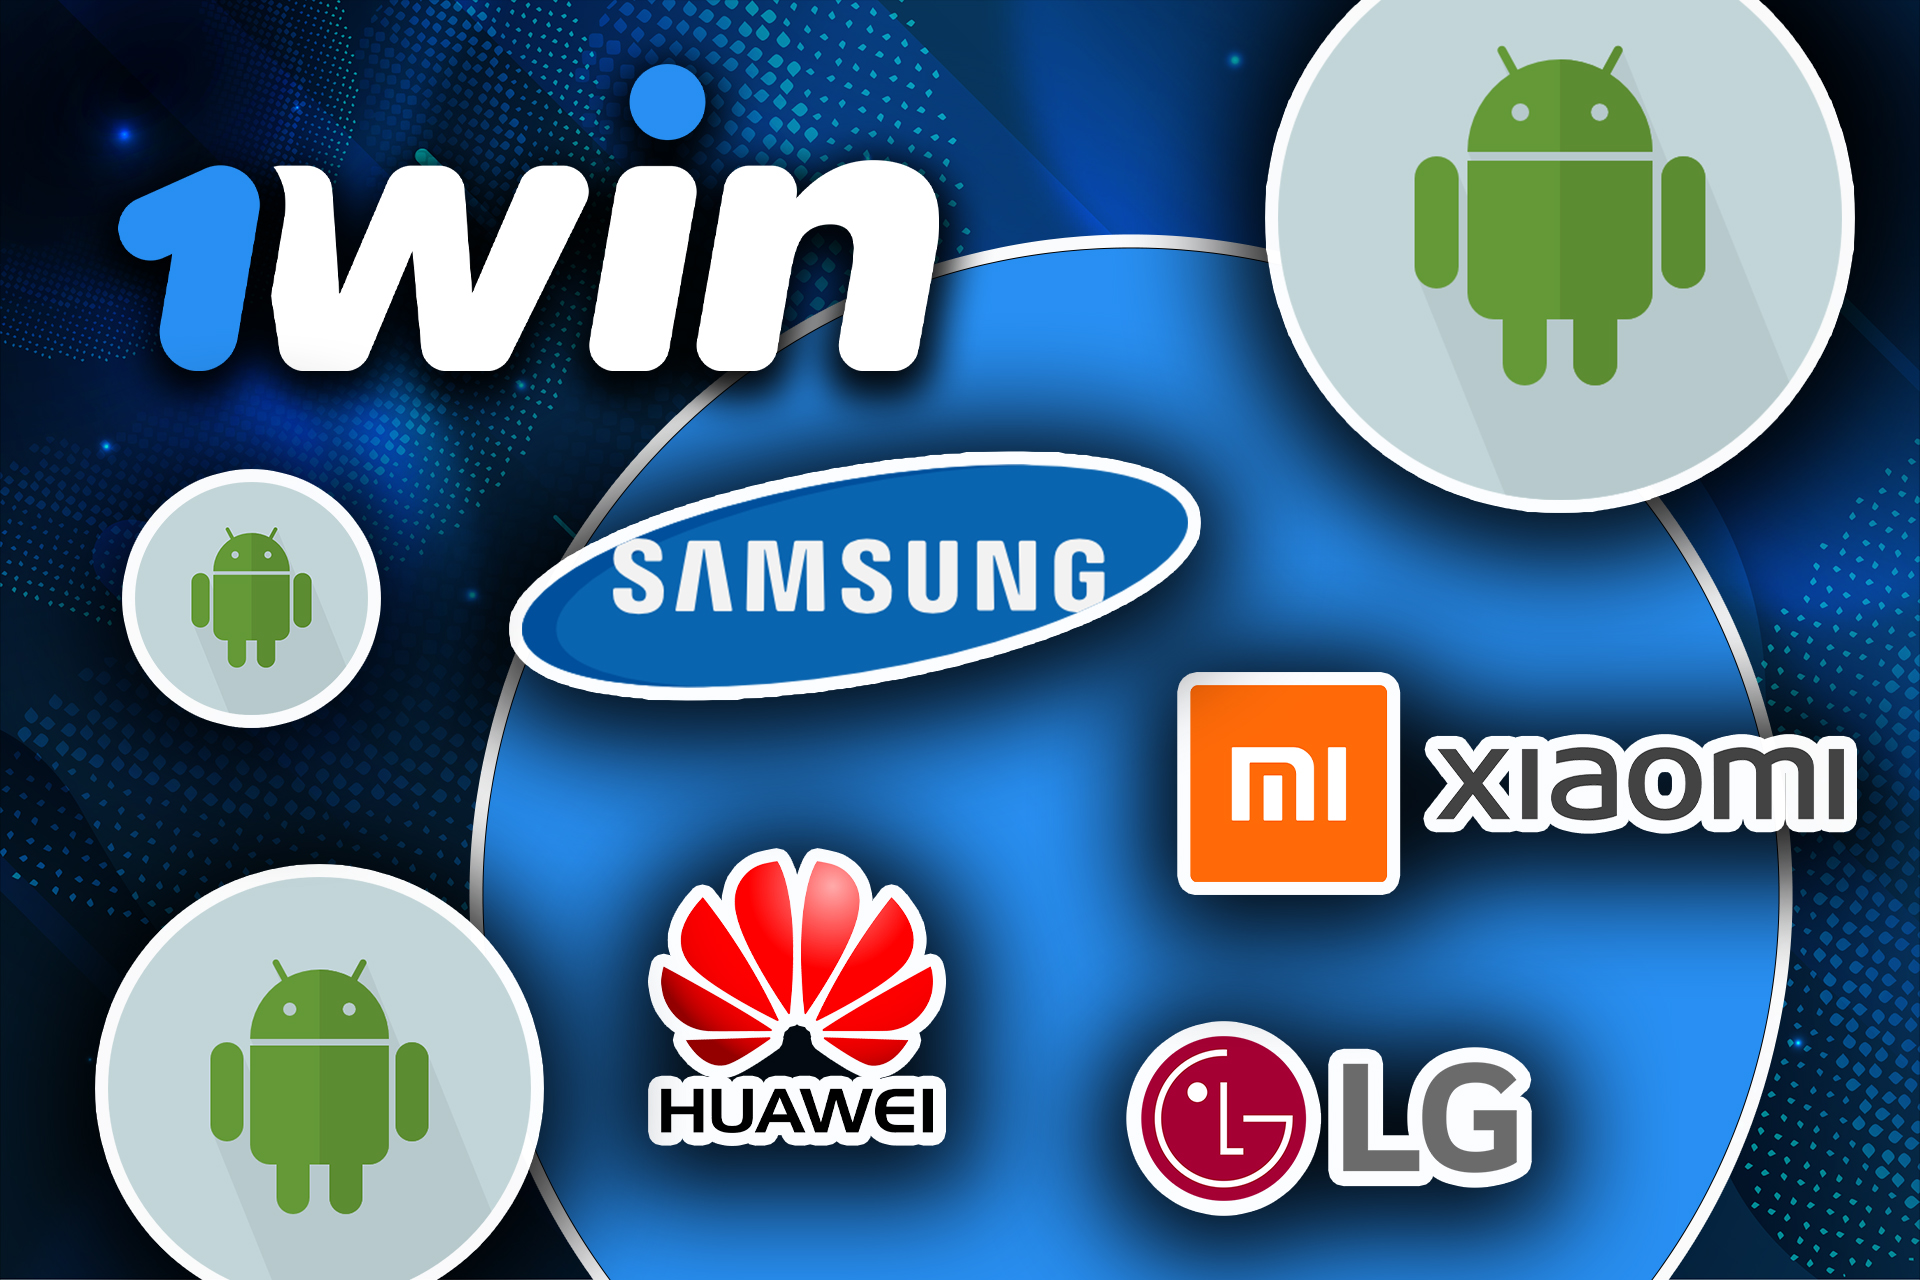 Aquí hay una lista de dispositivos Android en los que puede instalar la aplicación 1win.